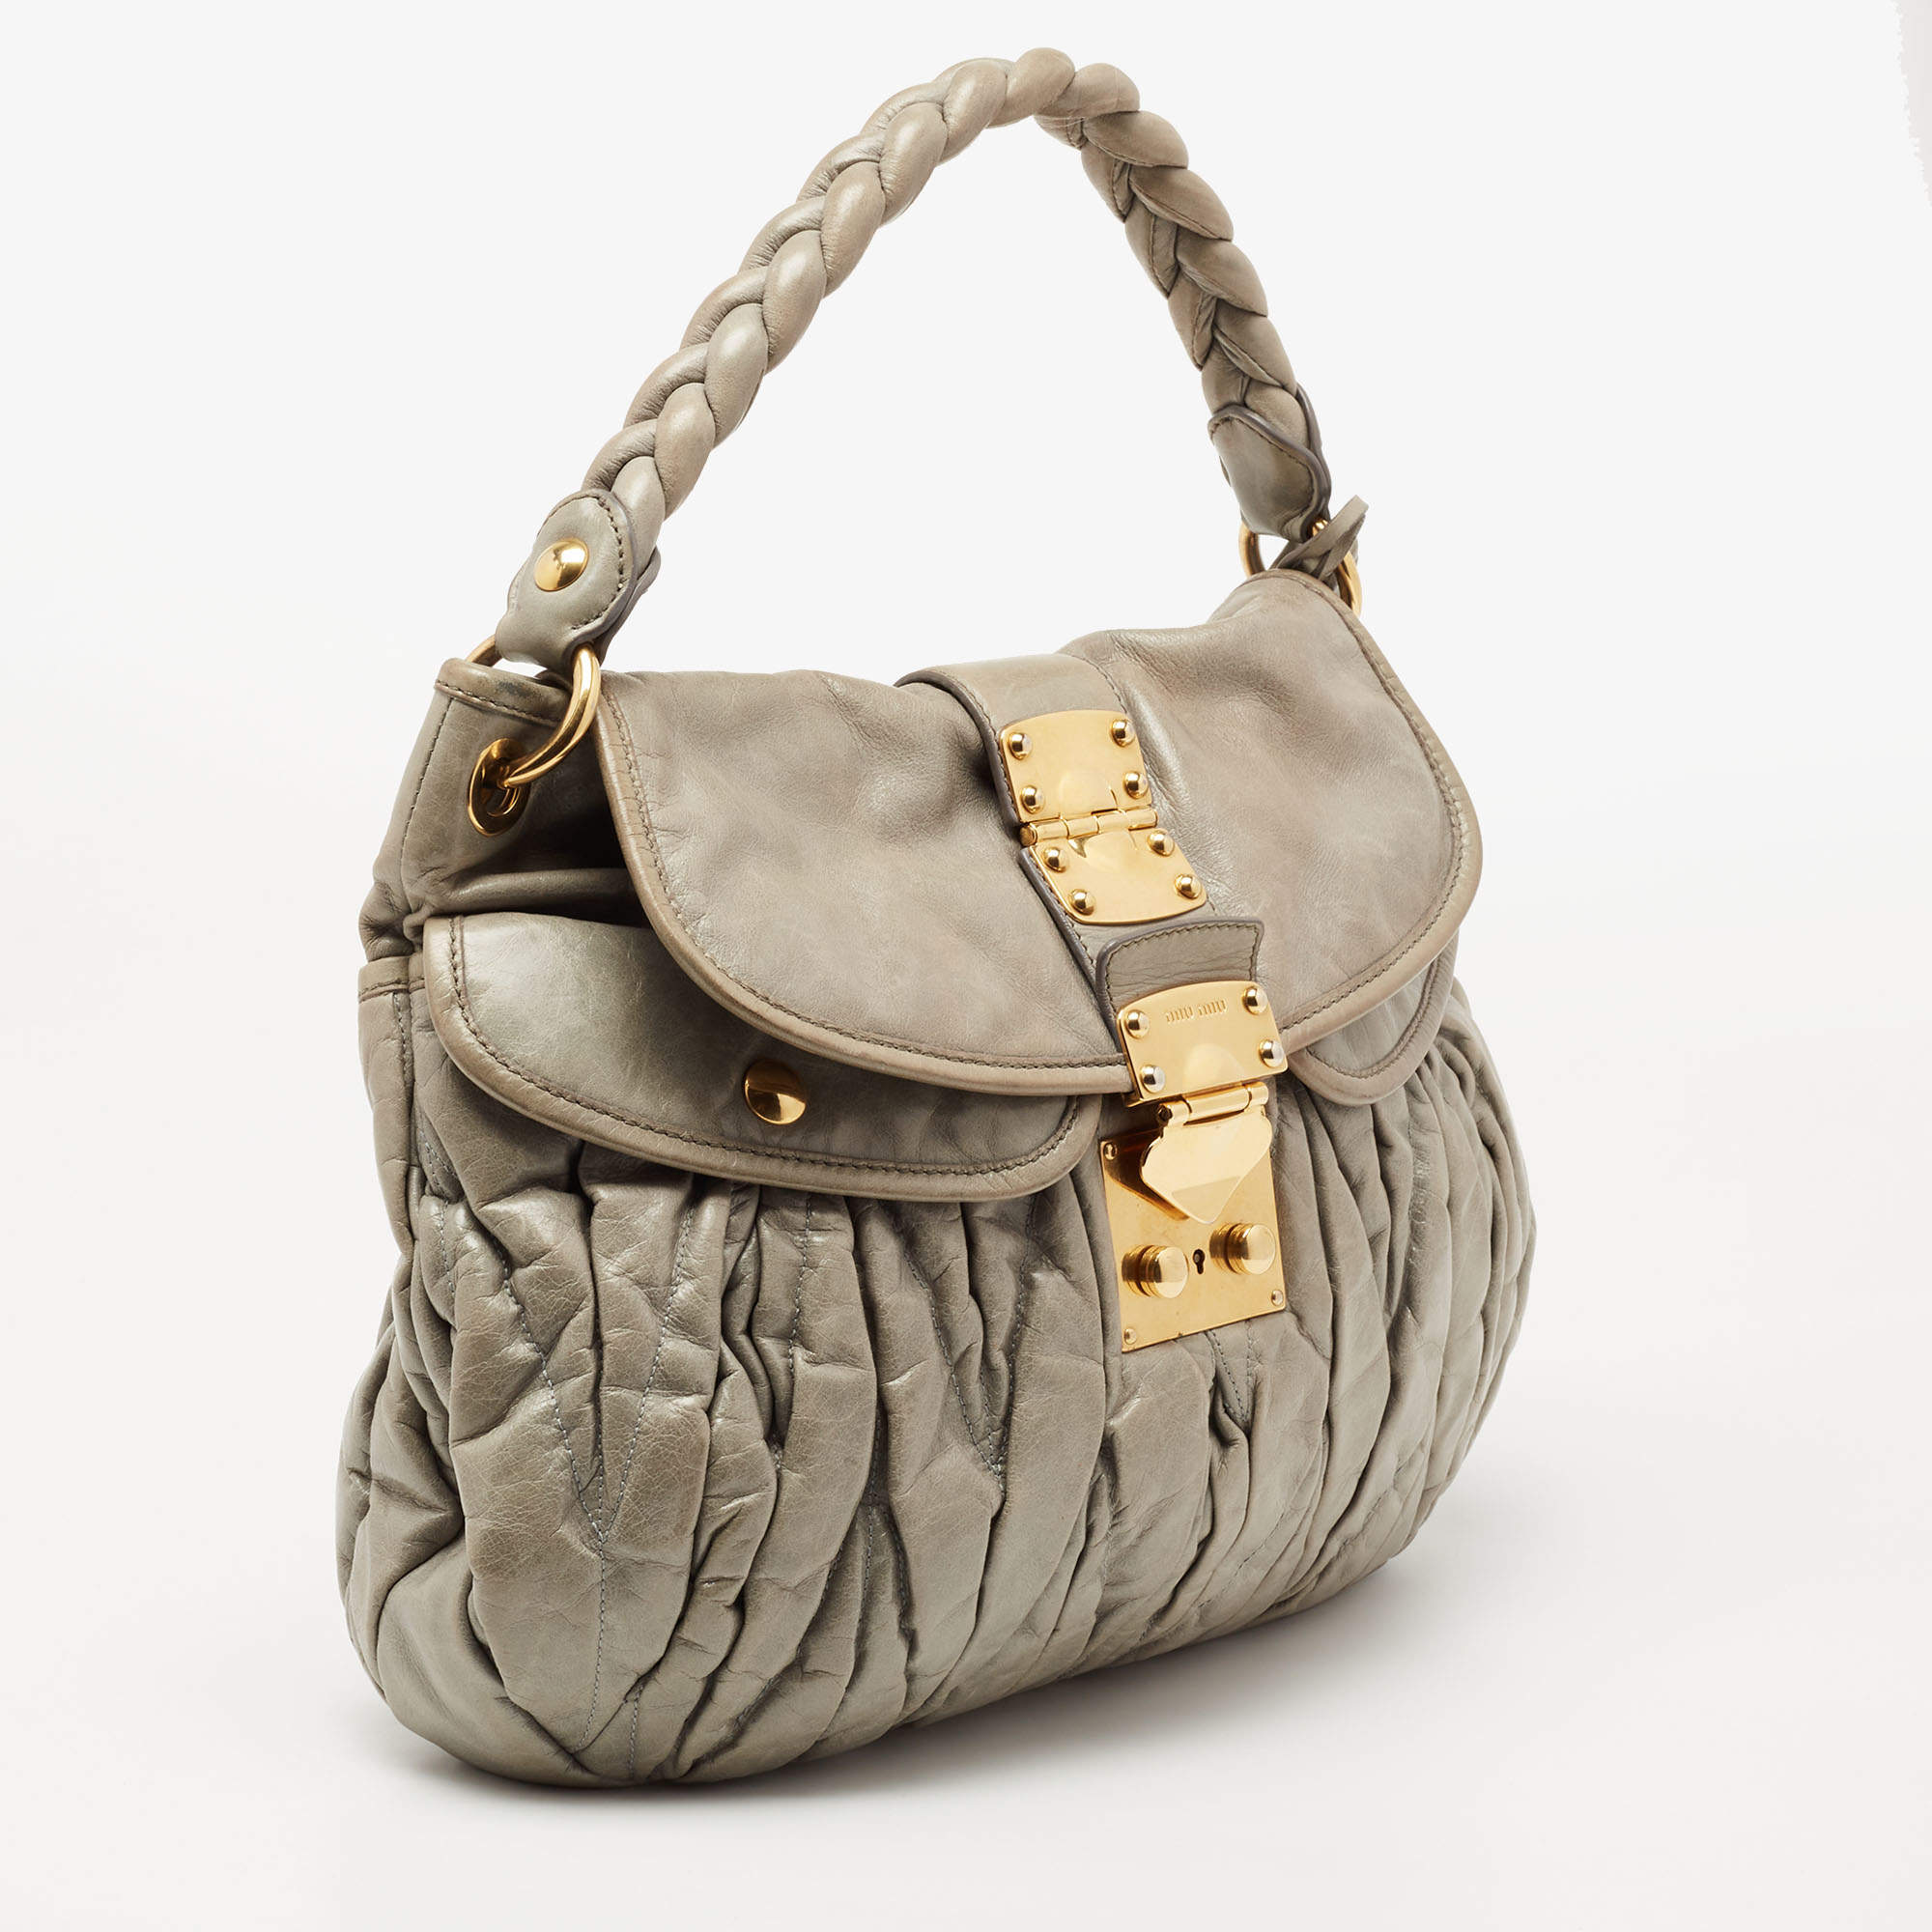 Coffer leather handbag Miu Miu Brown in Leather - 20582632